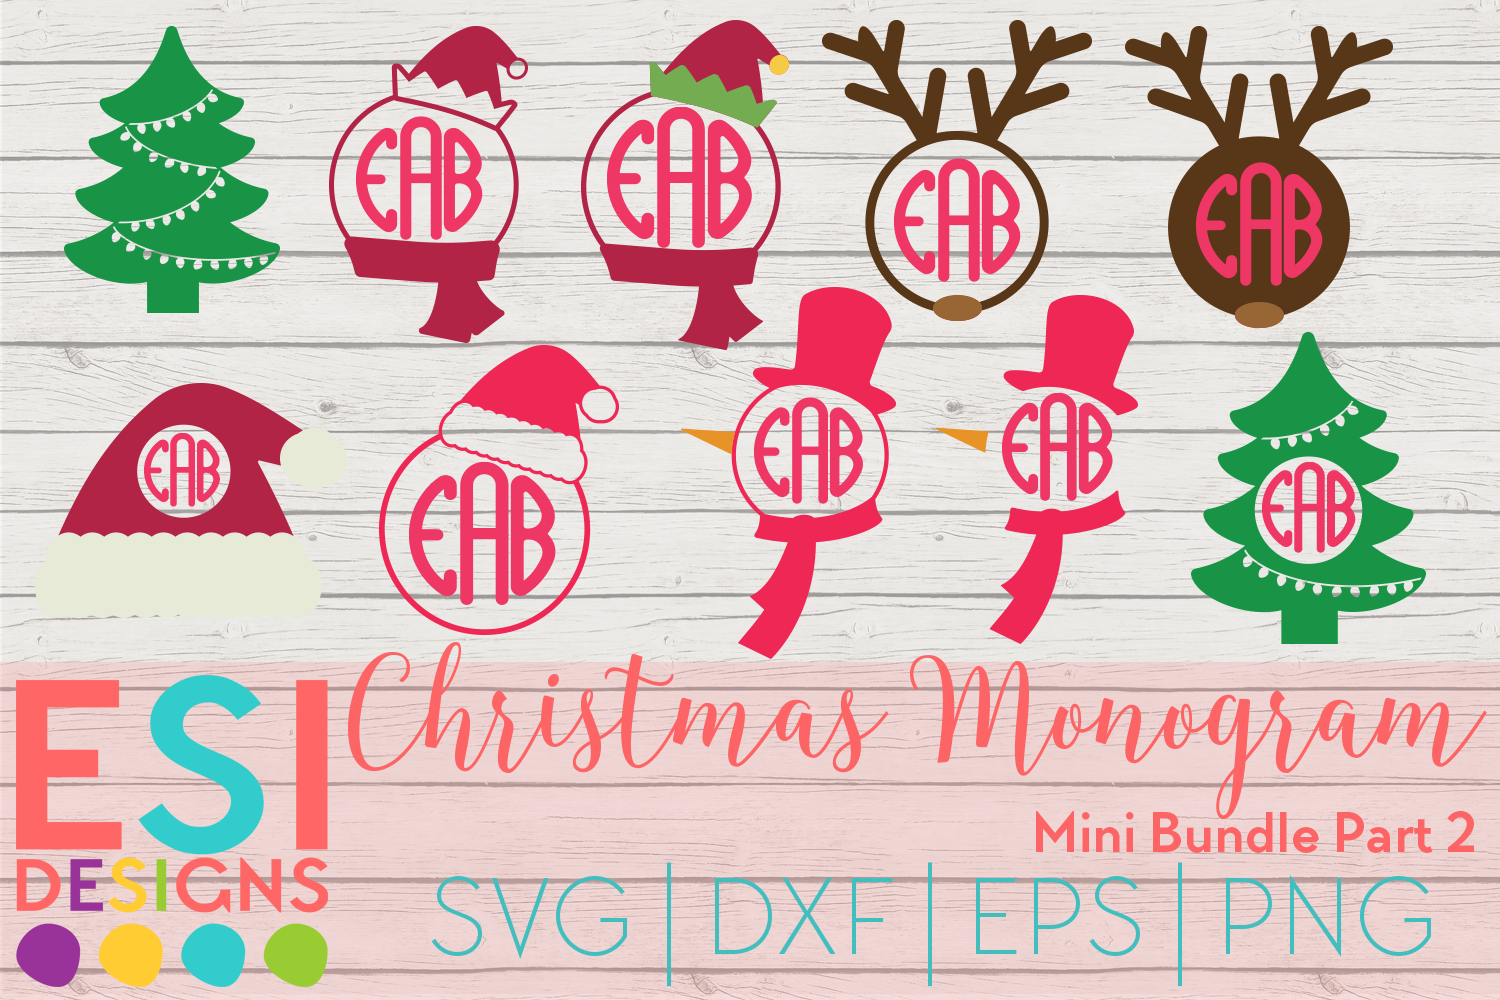 Christmas Monogram Design Mini Bundle Part 2|SVG DXF EPS PNG